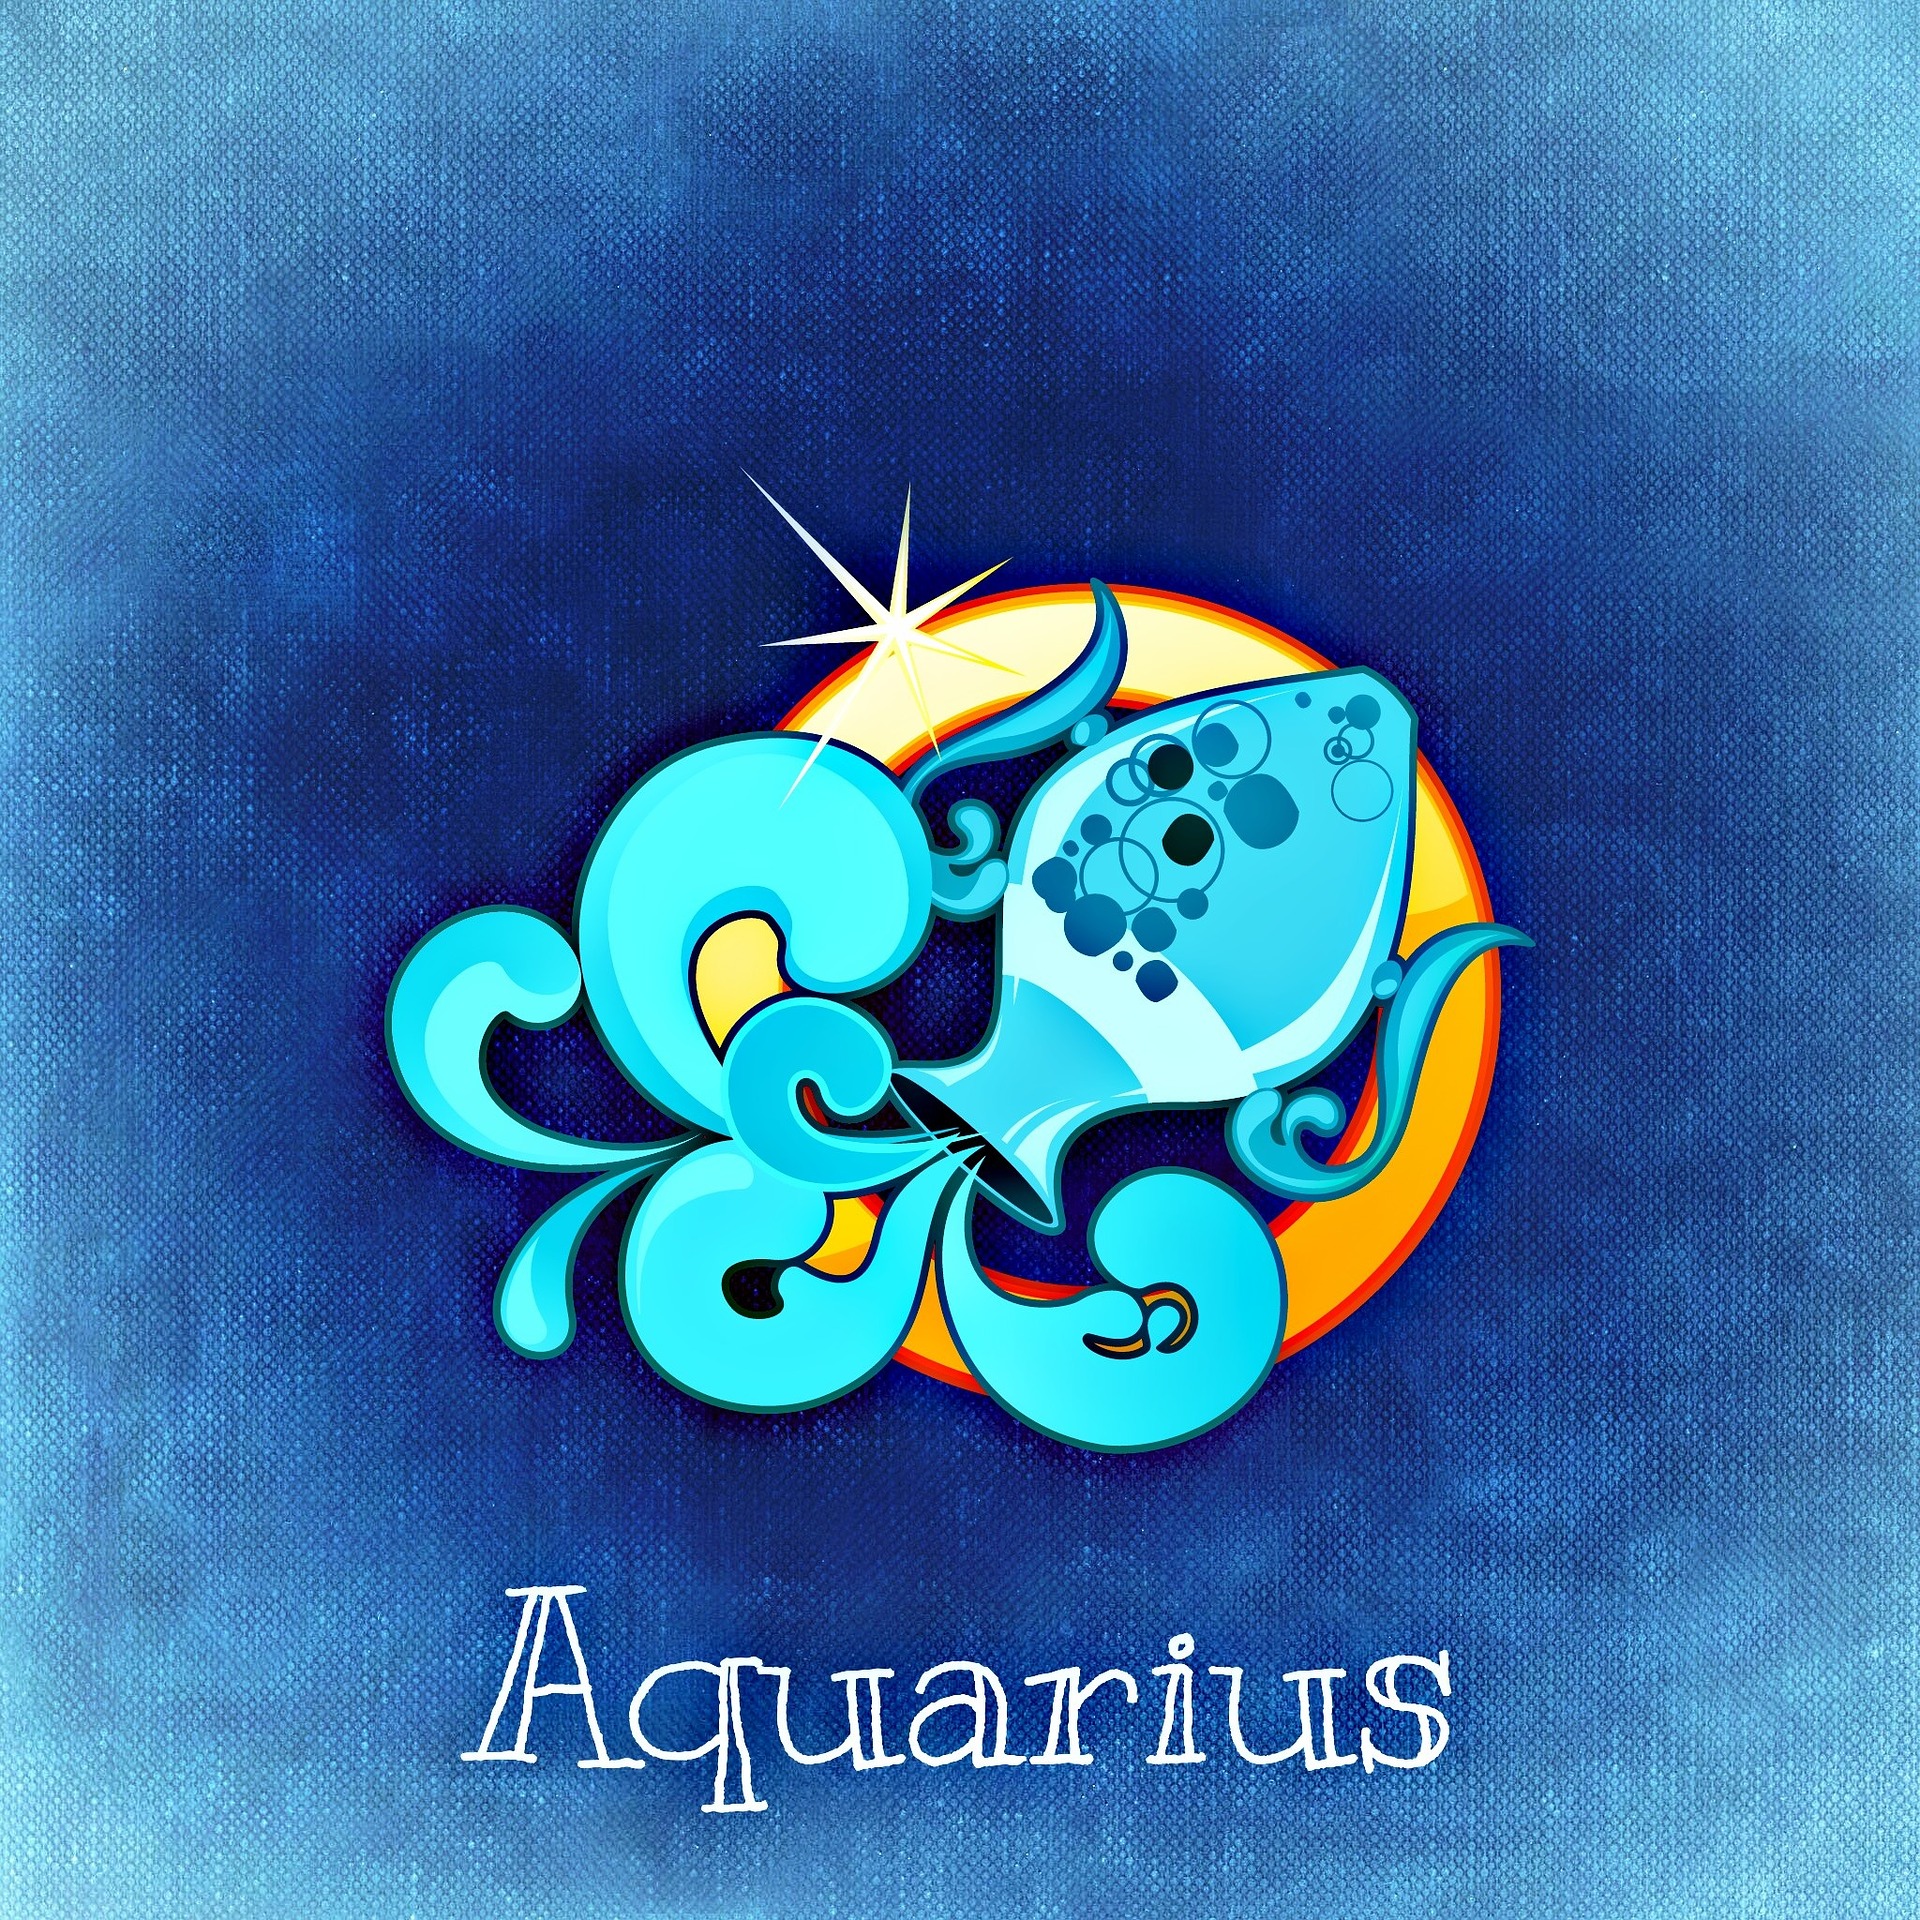 born under Aquarius sign